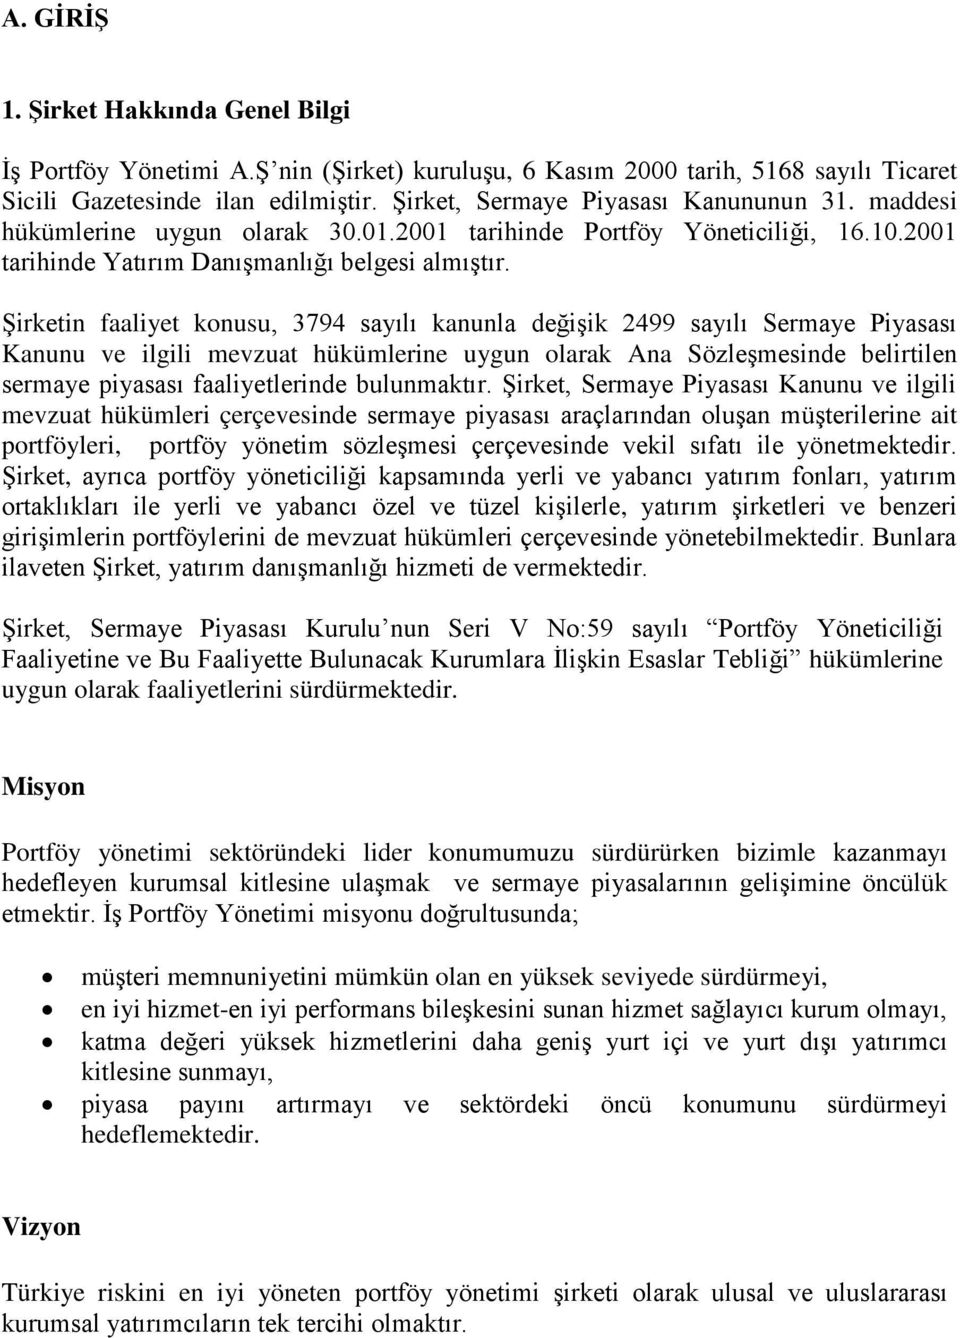 ġirketin faaliyet konusu, 3794 sayılı kanunla değiģik 2499 sayılı Sermaye Piyasası Kanunu ve ilgili mevzuat hükümlerine uygun olarak Ana SözleĢmesinde belirtilen sermaye piyasası faaliyetlerinde